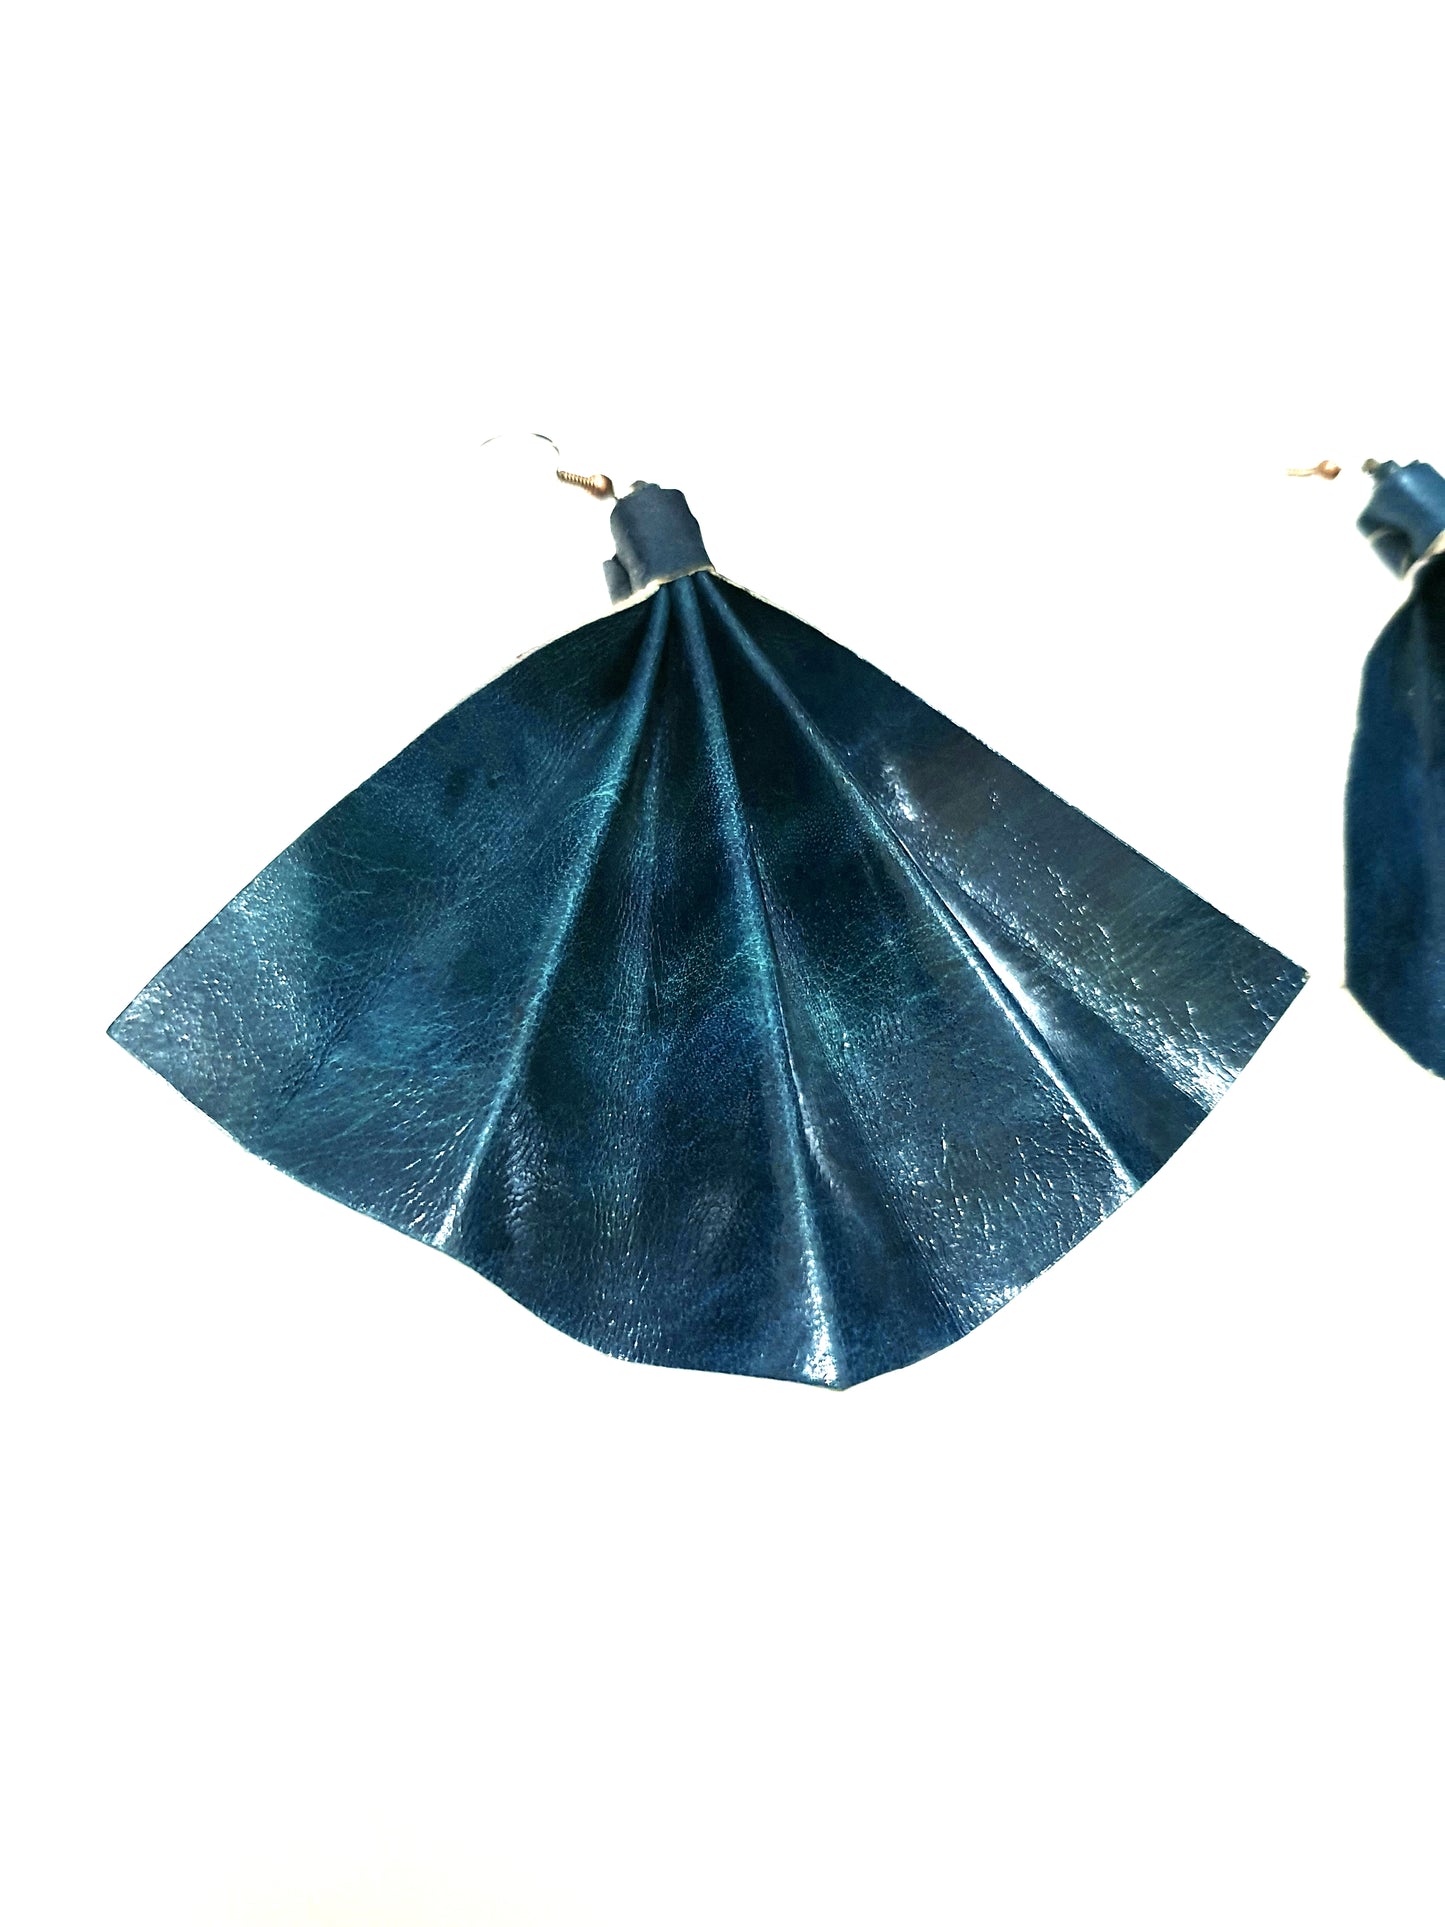 Fan shaped statement earrings - Teal blue